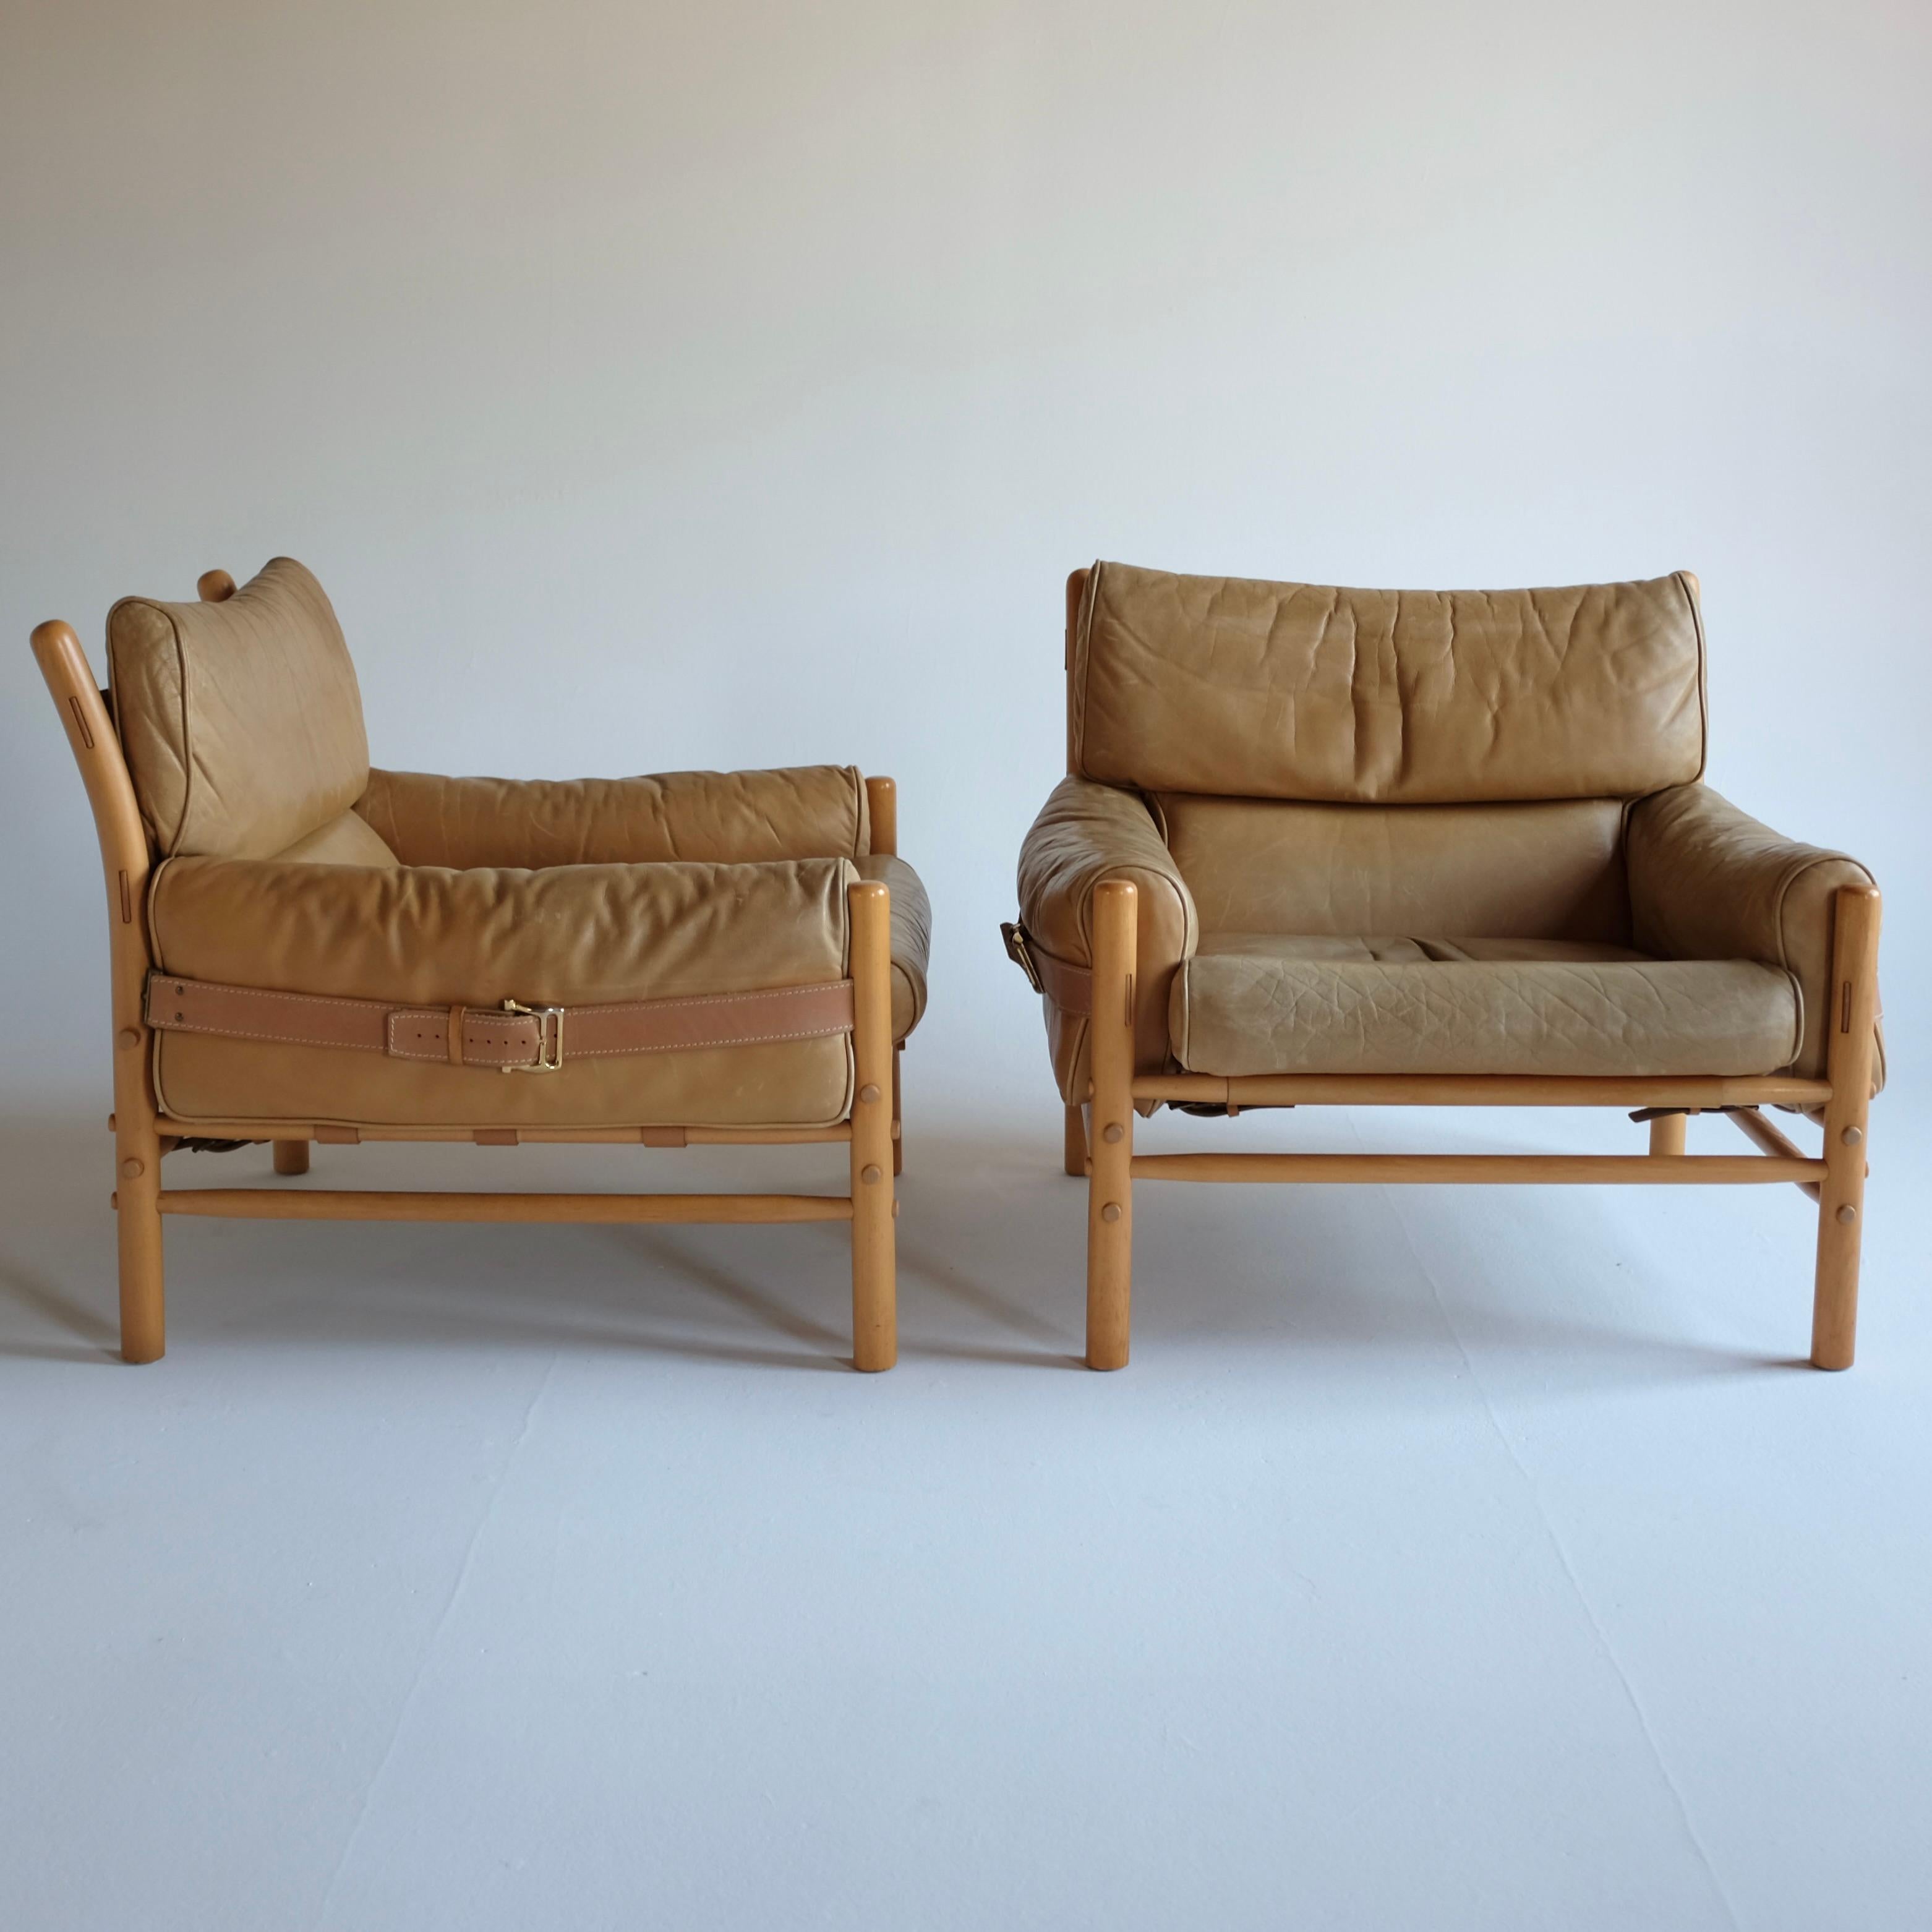 Ein Paar Kontiki-Stühle aus Holz und Leder von Arne Norell für sein gleichnamiges Unternehmen in Schweden. Arne Norells Entwürfe sind für ihren Komfort und ihre Bequemlichkeit bekannt, was sich besonders bei diesen Kontiki-Loungesesseln zeigt.